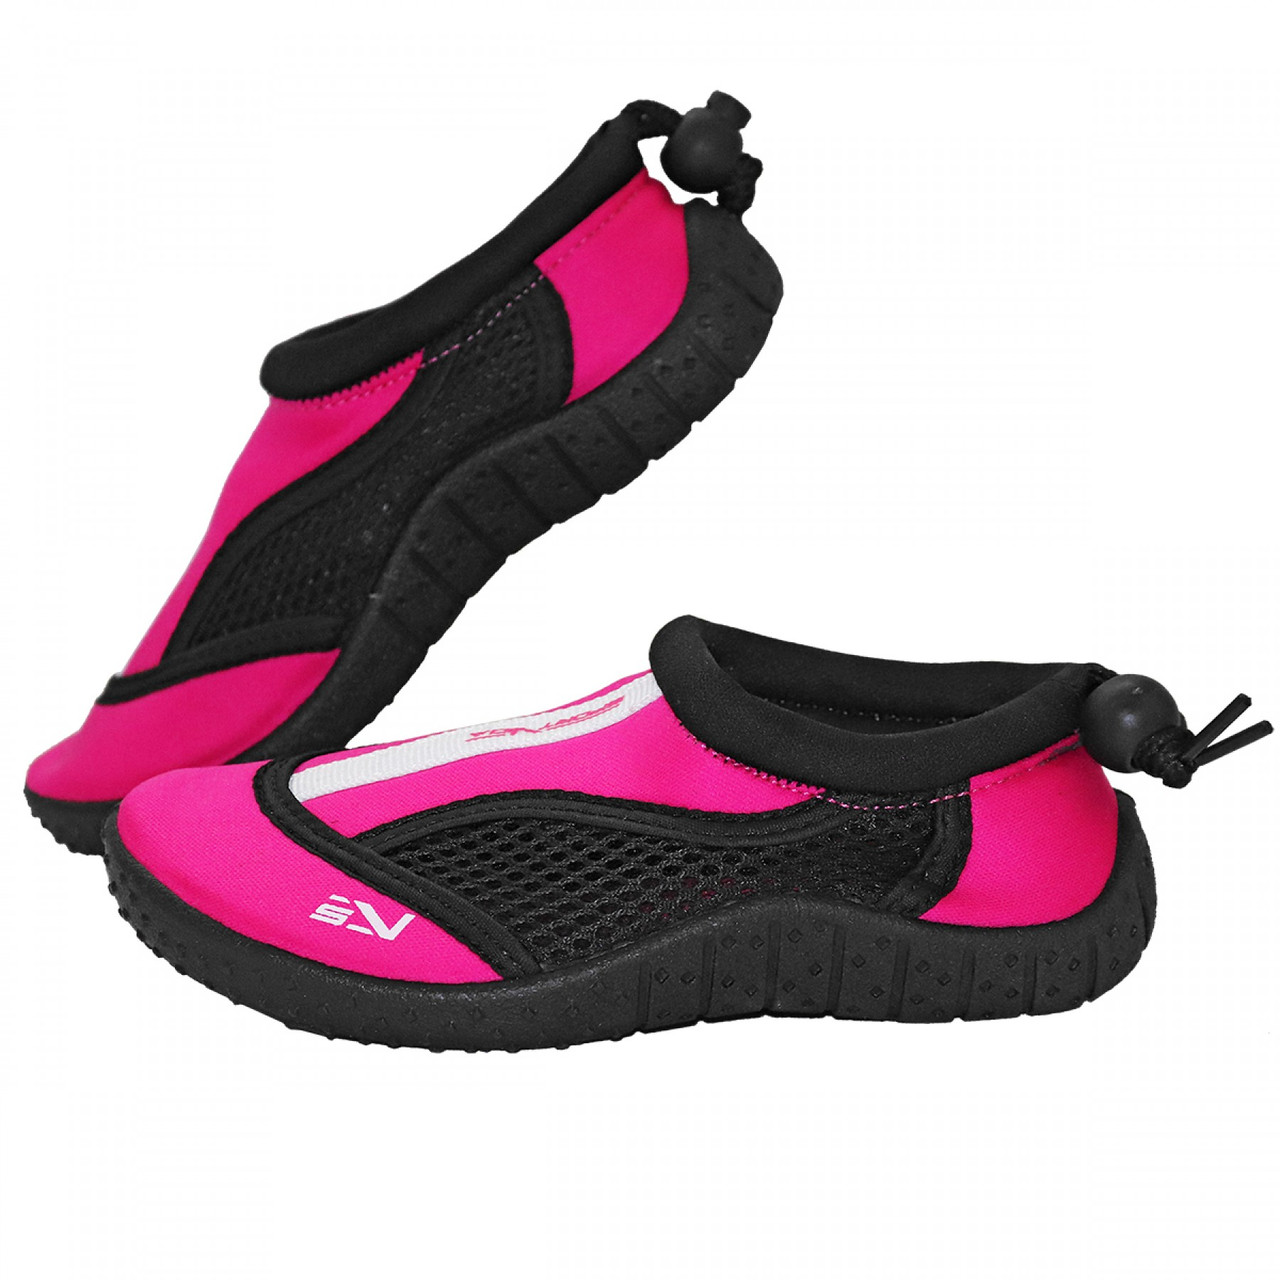 Взуття для пляжу та коралів (аквашузи) SportVida SV-GY0001-R29 Size 29 Black/Pink